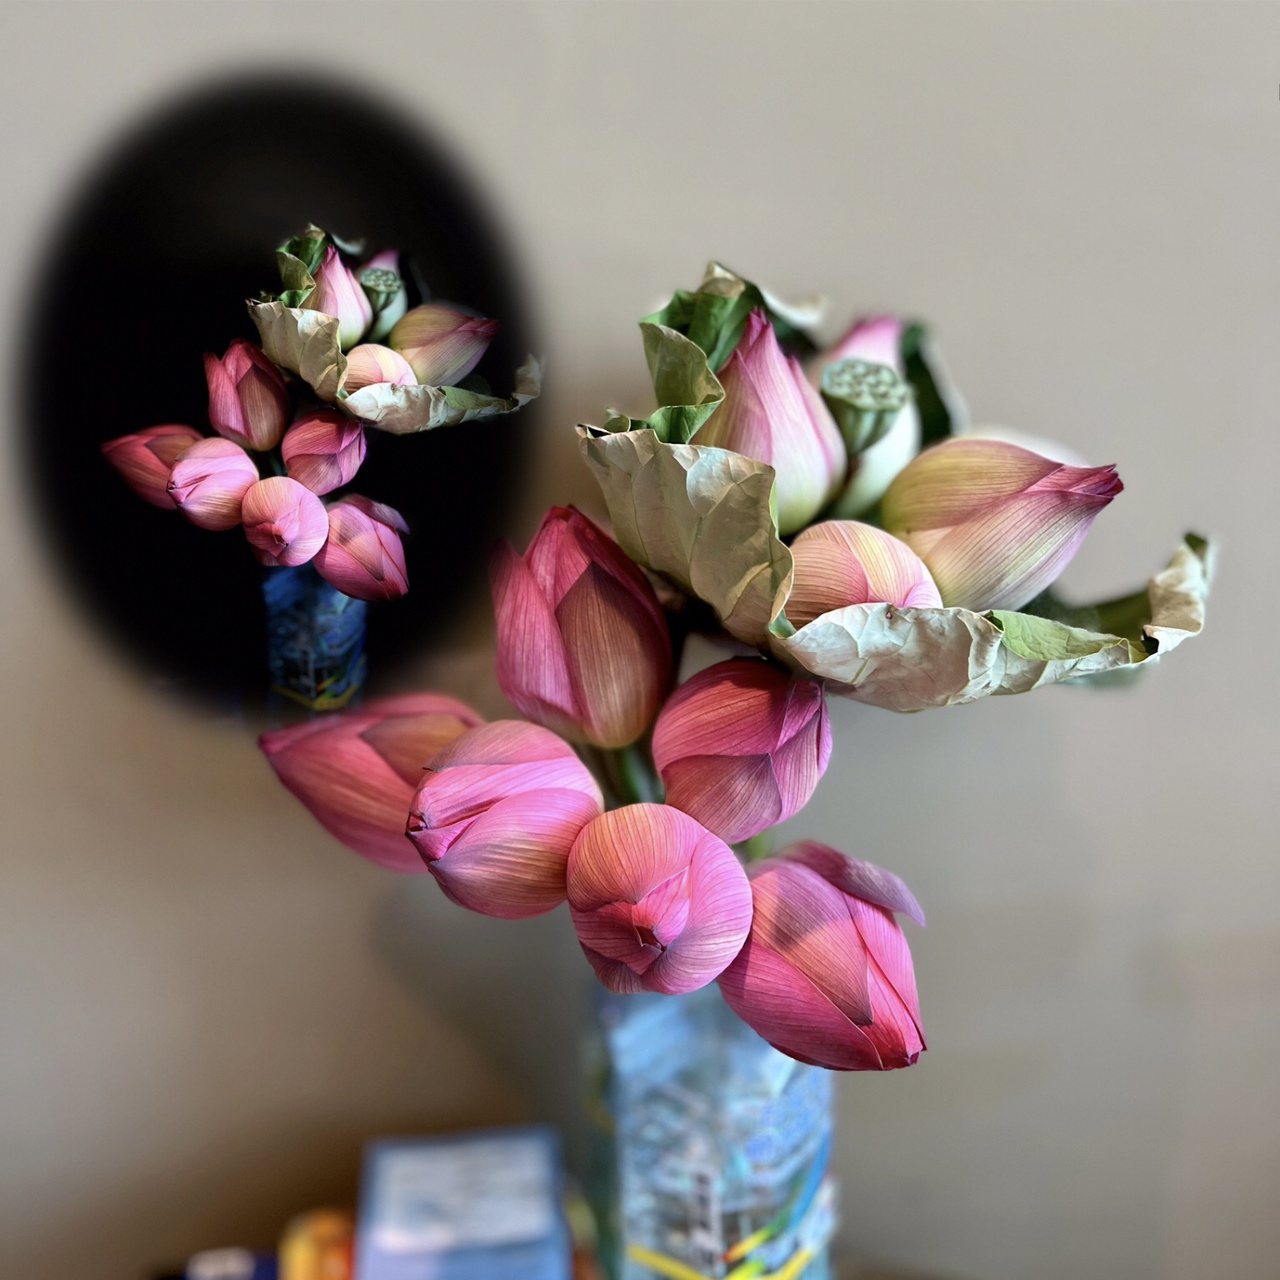 買回來的二束，插在臨時用保特瓶當花器用的花瓶裡，不時還聞得到花香，真所謂滿室芬芳。